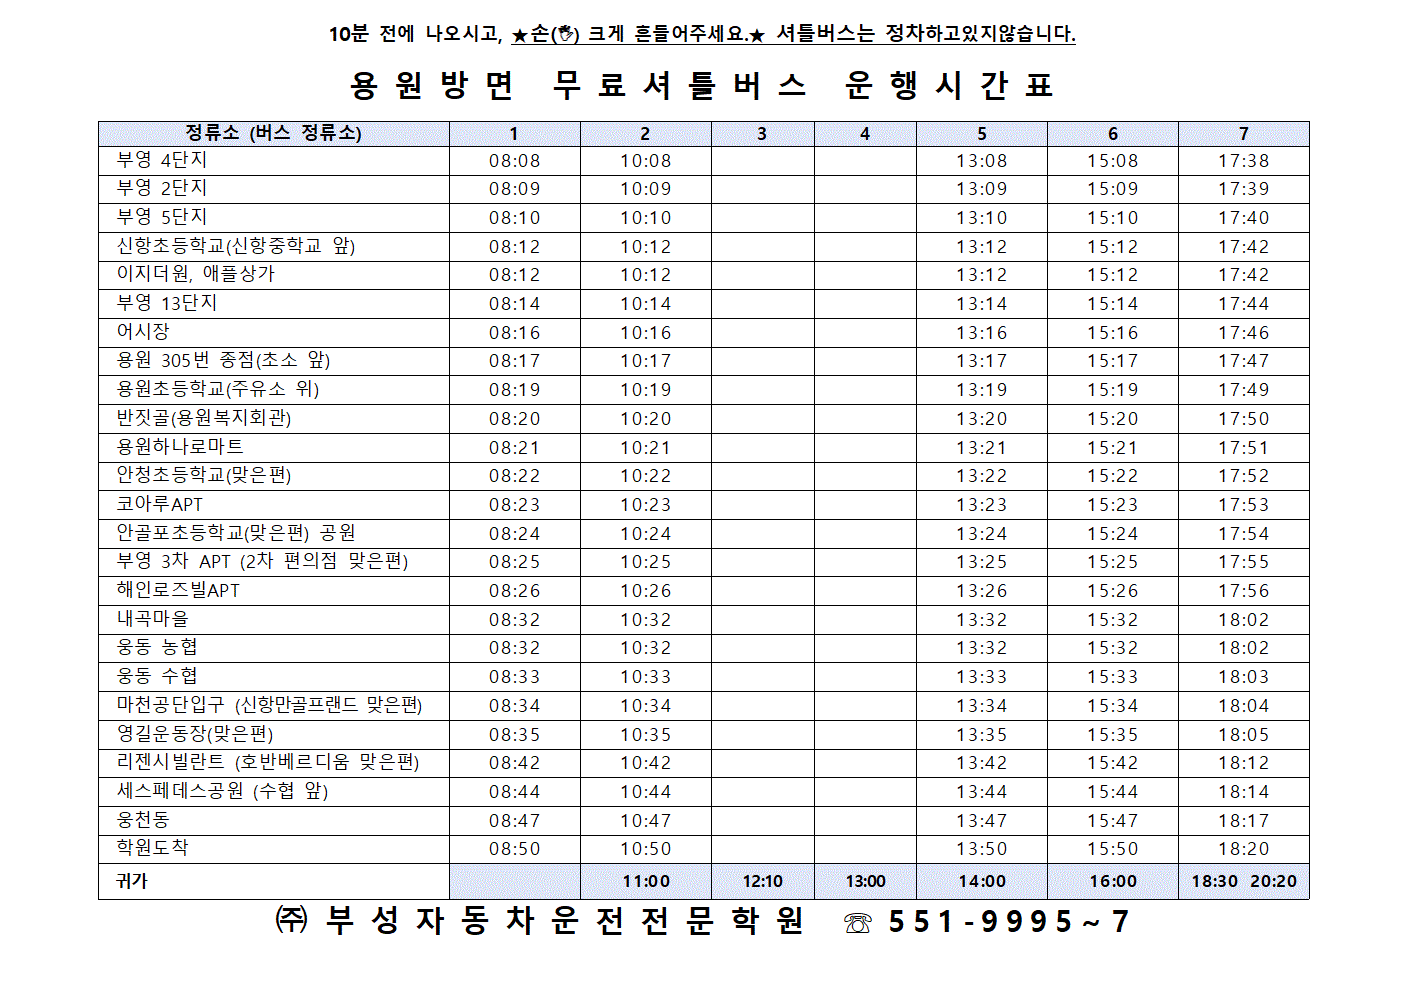 용원 운행시간표 23년도 최신001.gif